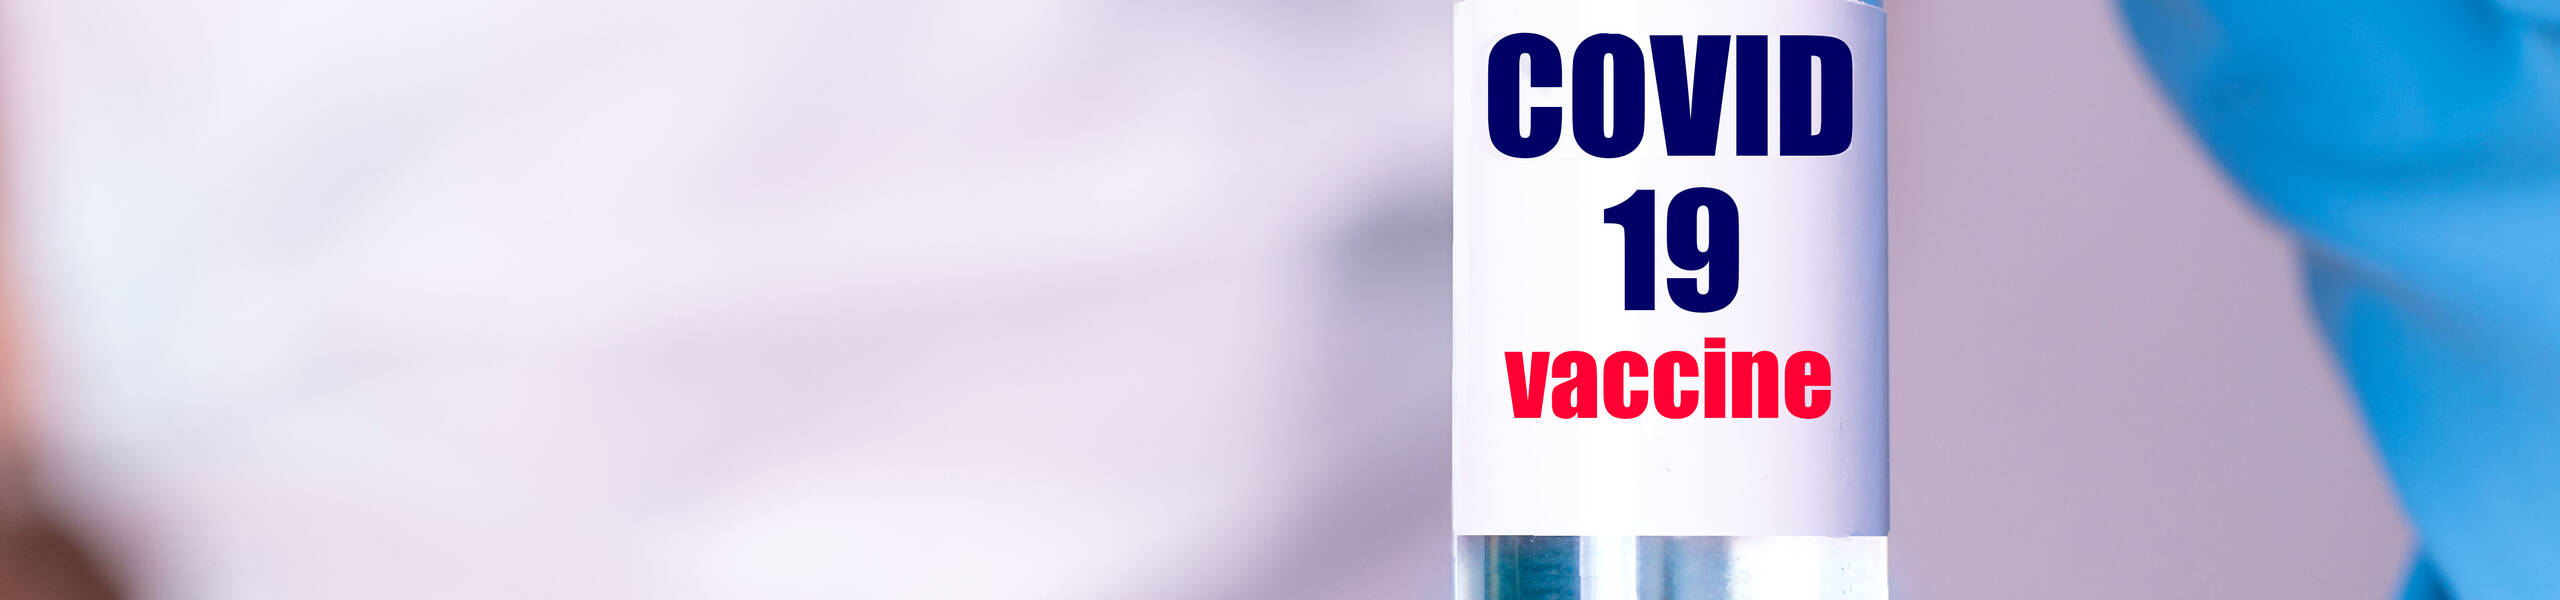 Who will win Covid-19 vaccine race?